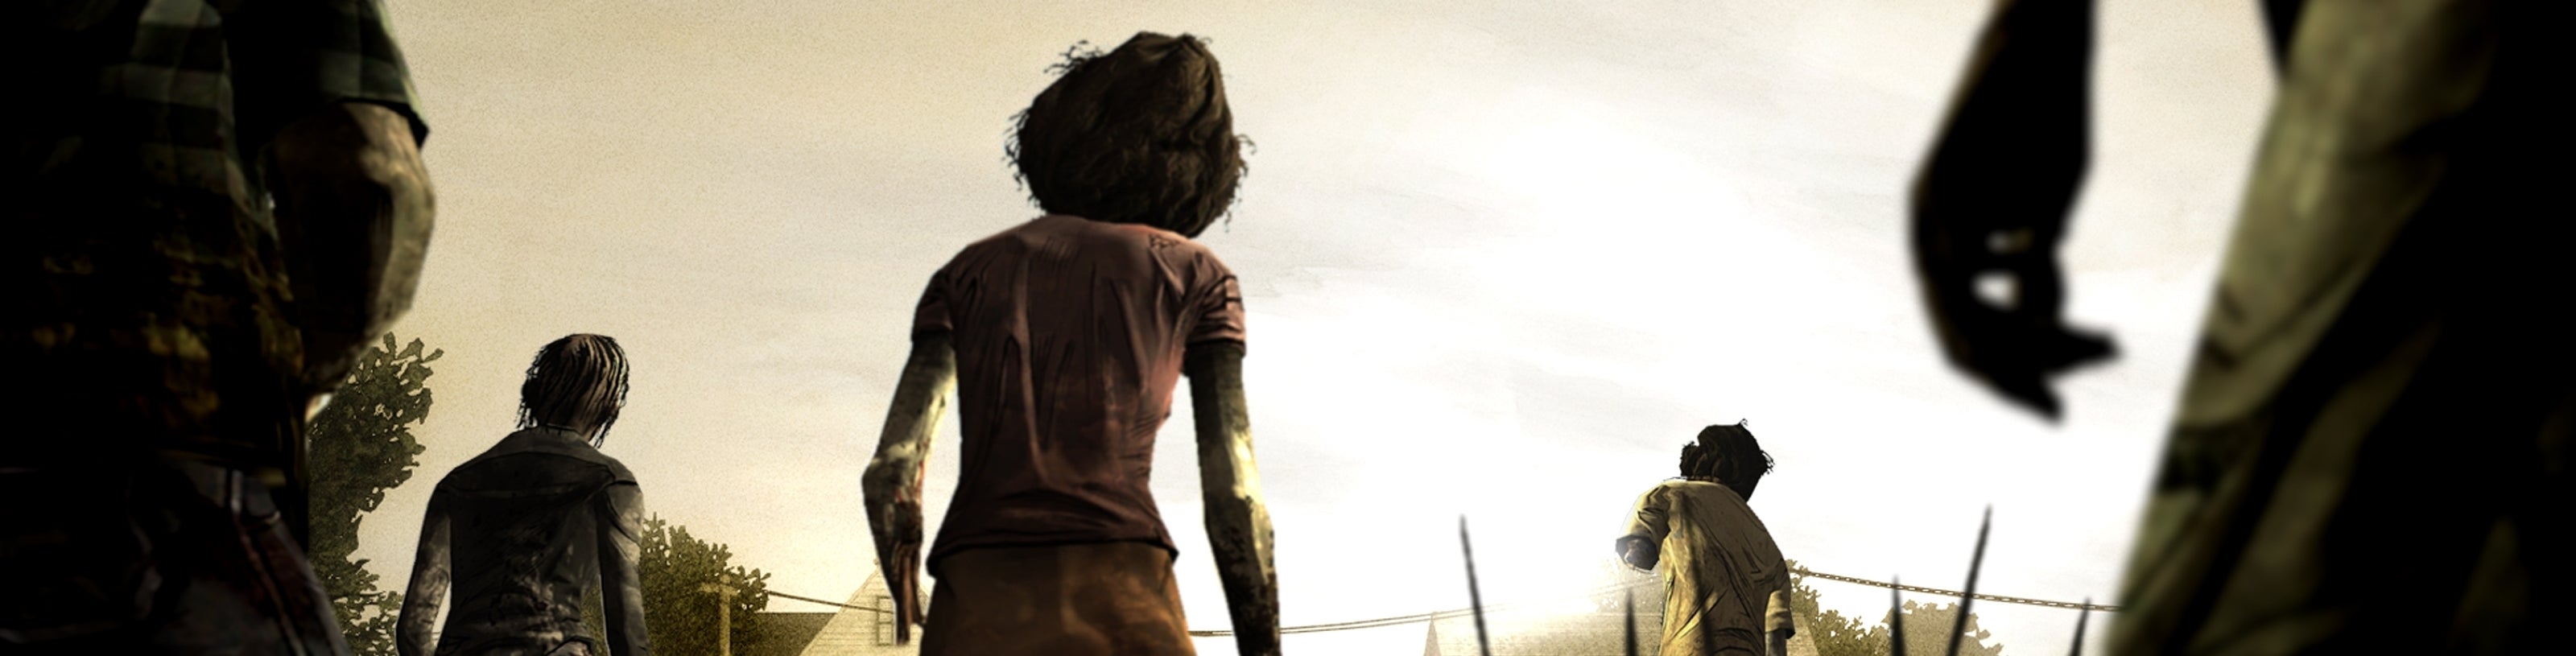 Imagen para The Walking Dead: A Telltale Games Series